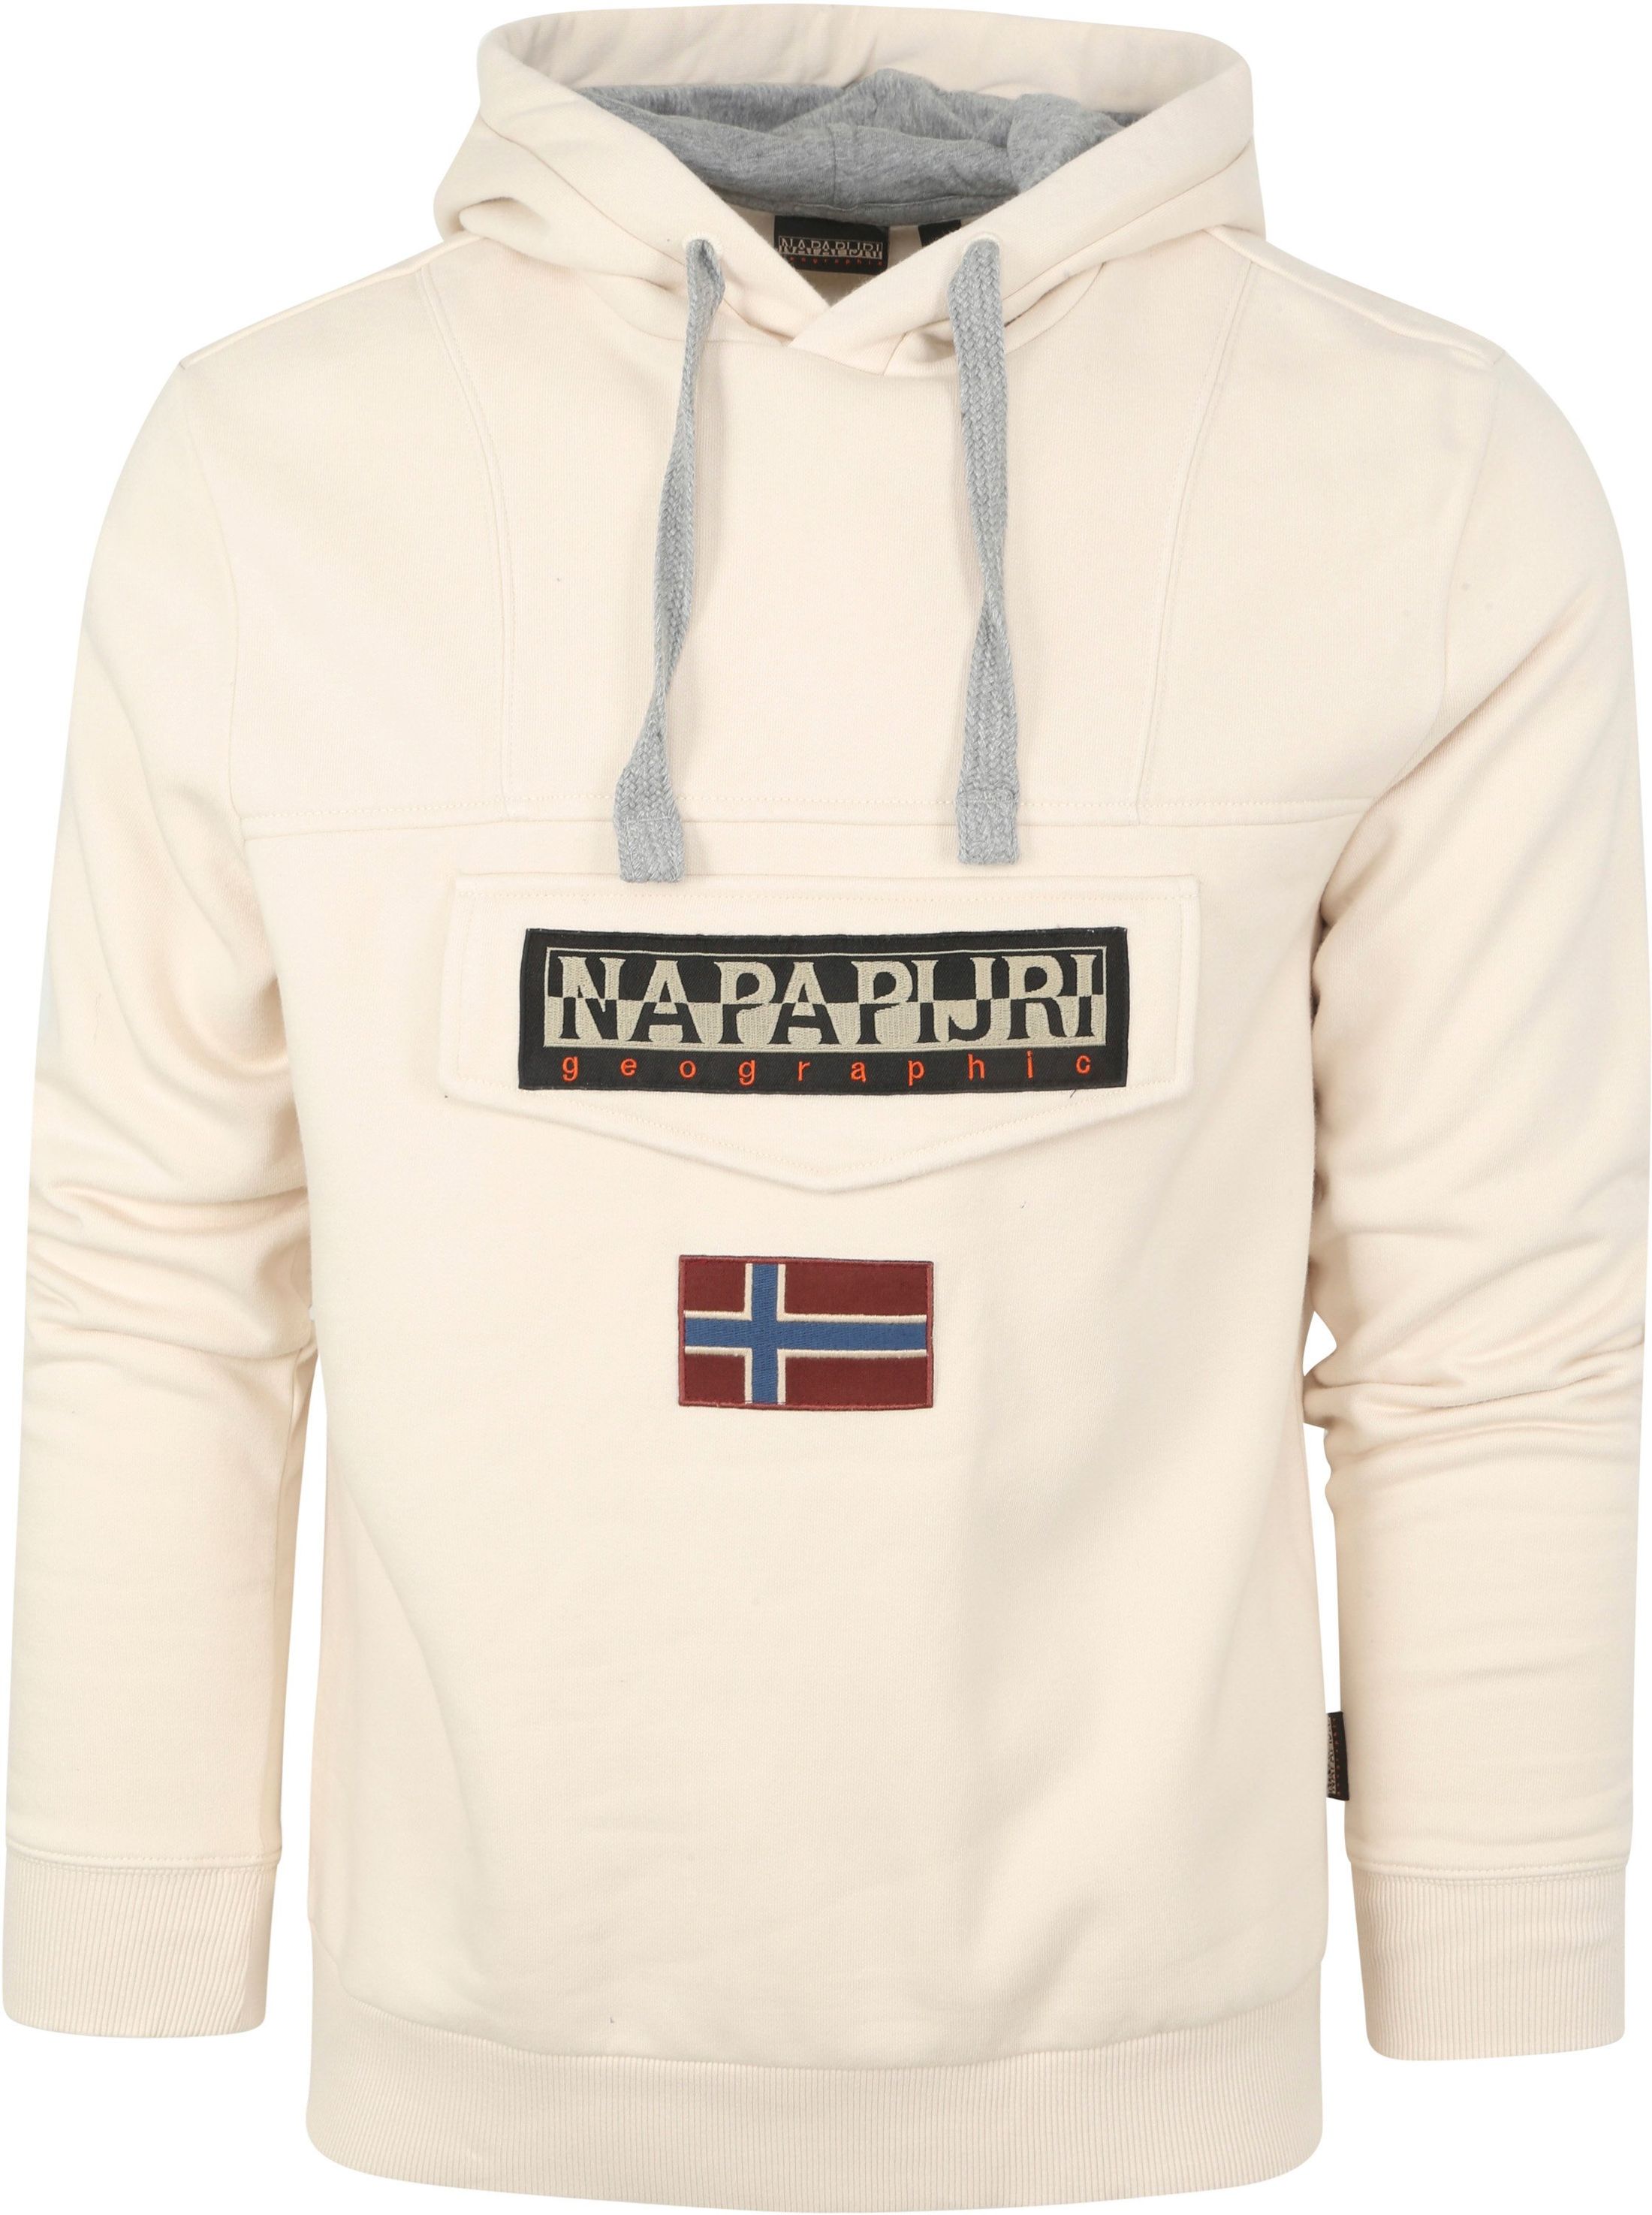 Napapijri Burgee Sweater Offwhite Off-White size L